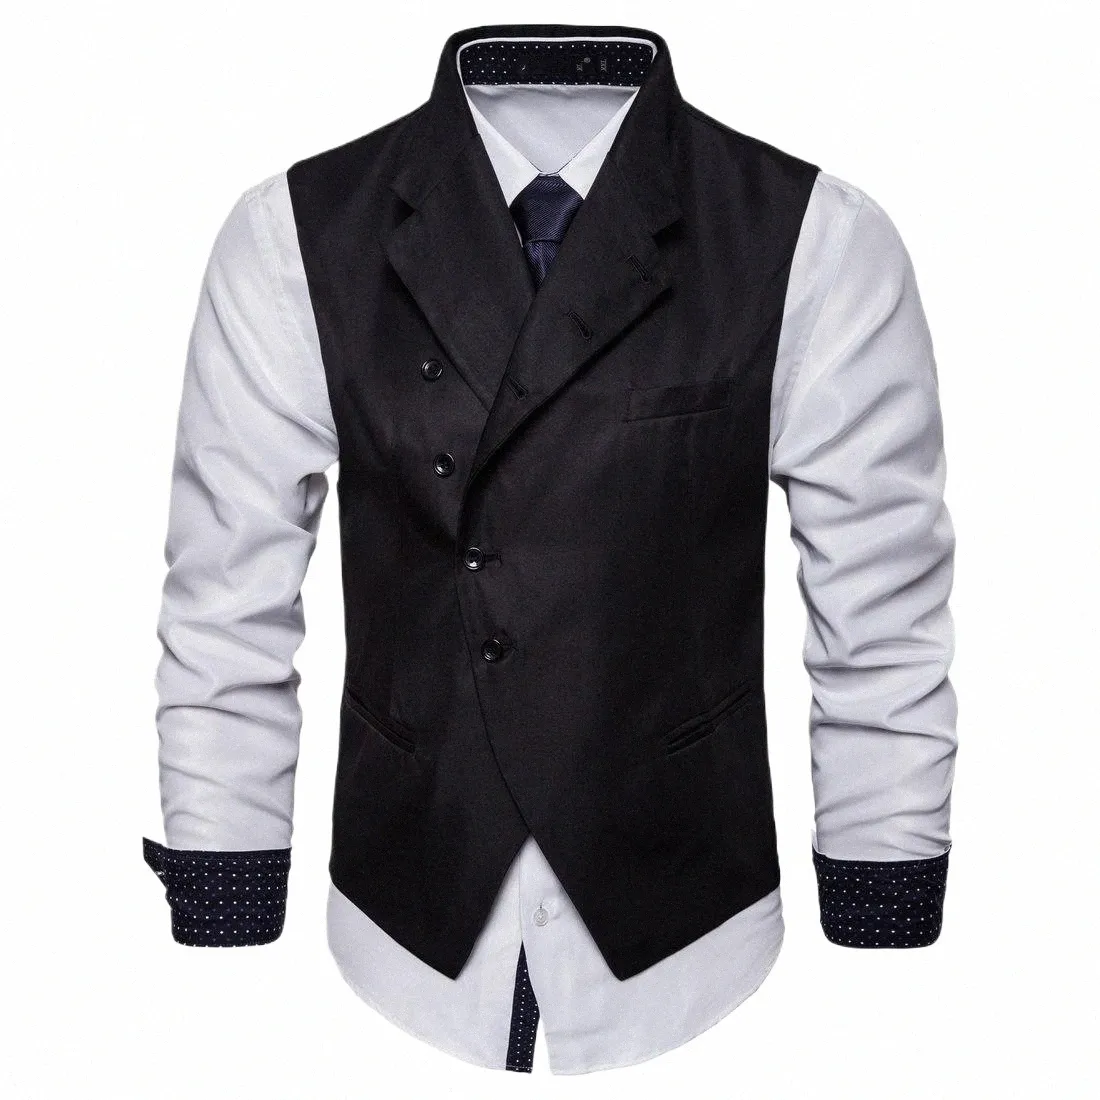 Personalizado estilo britânico masculino busin formal terno colete assimétrico suspensórios colete masculino fi novo terno colarinho colete F8S7 #